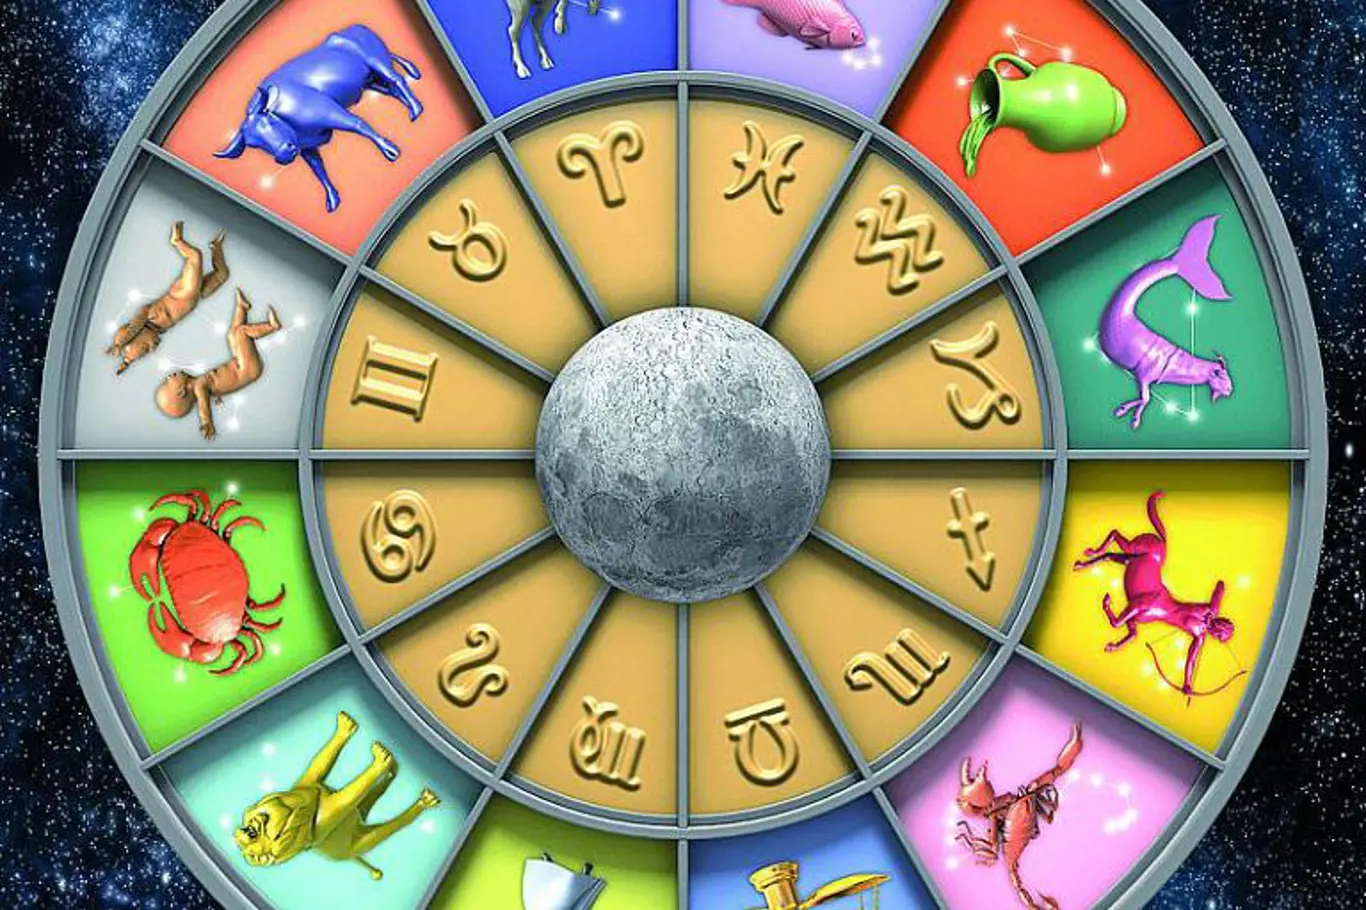 Šíp Plus přináší horoskop pro všechna znamení na rok 2012